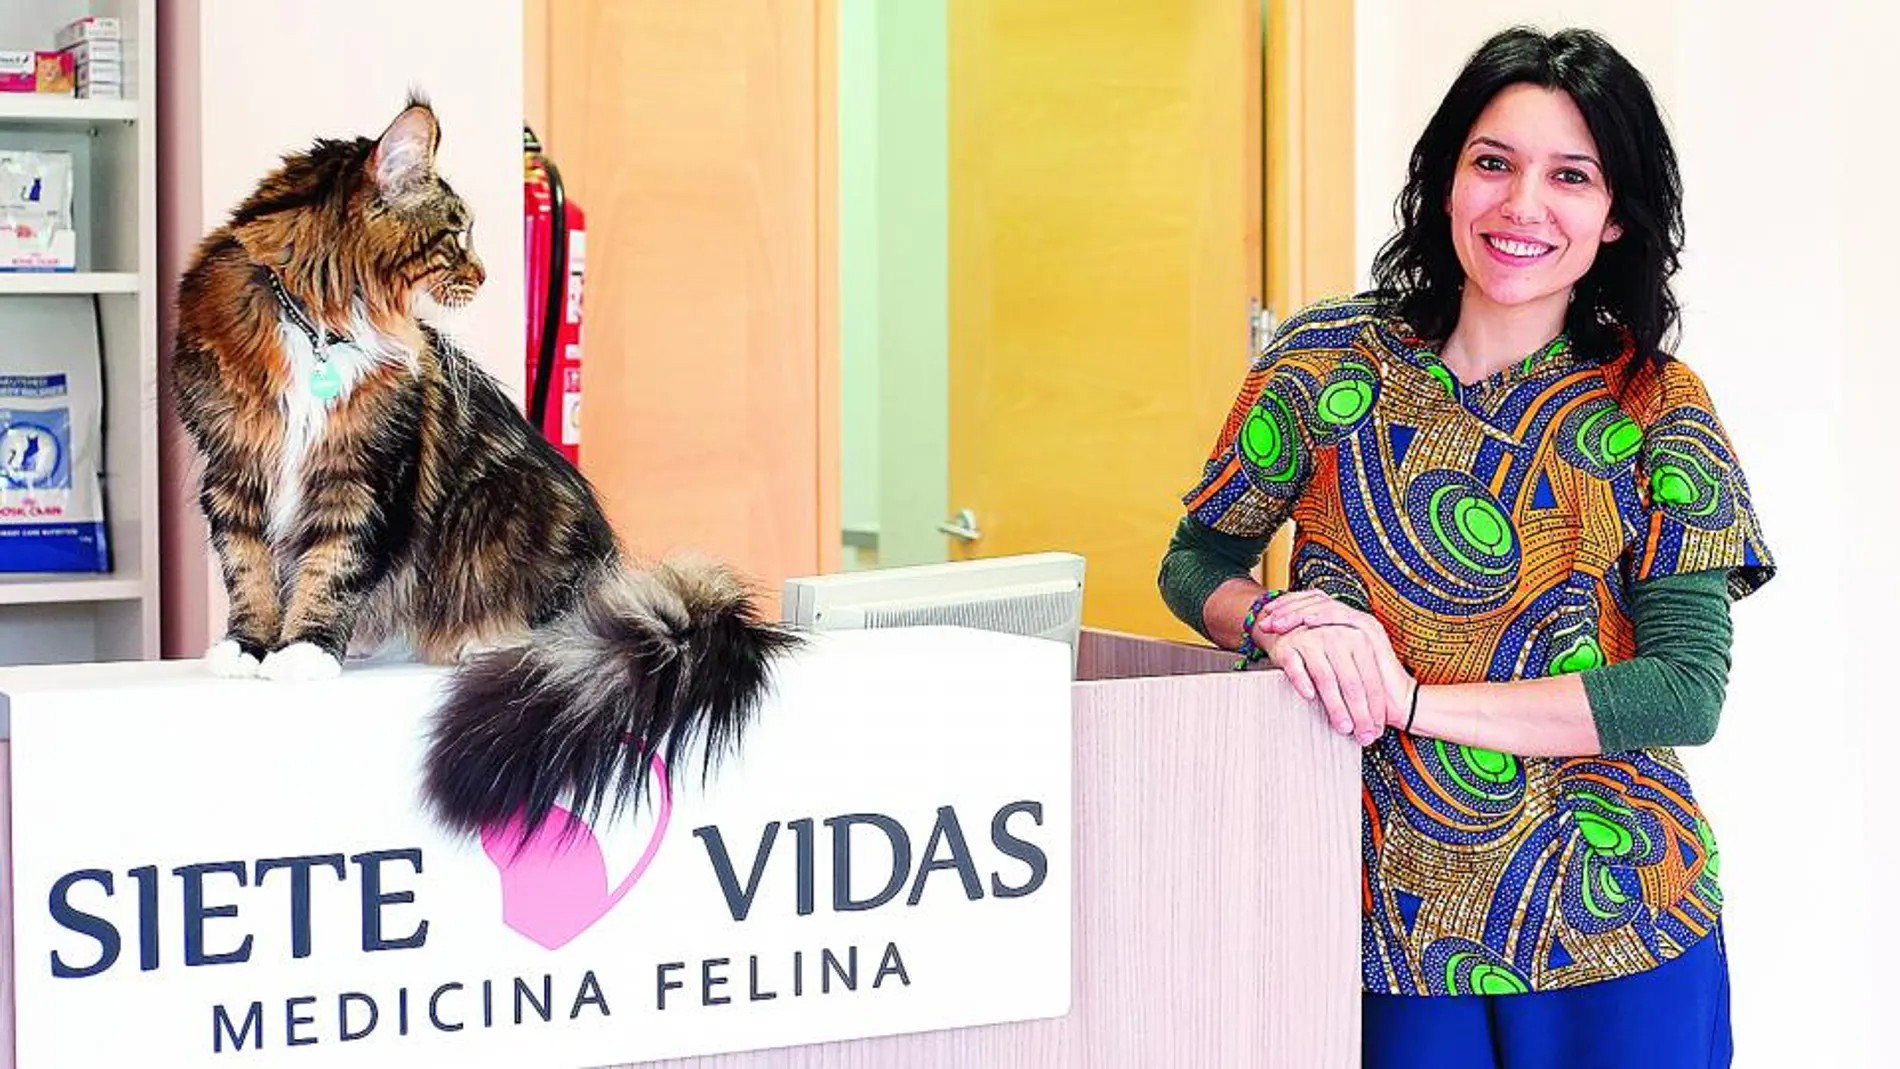 Abre en Valladolid el primer centro veterinario exclusivo para gatos de Castilla y León